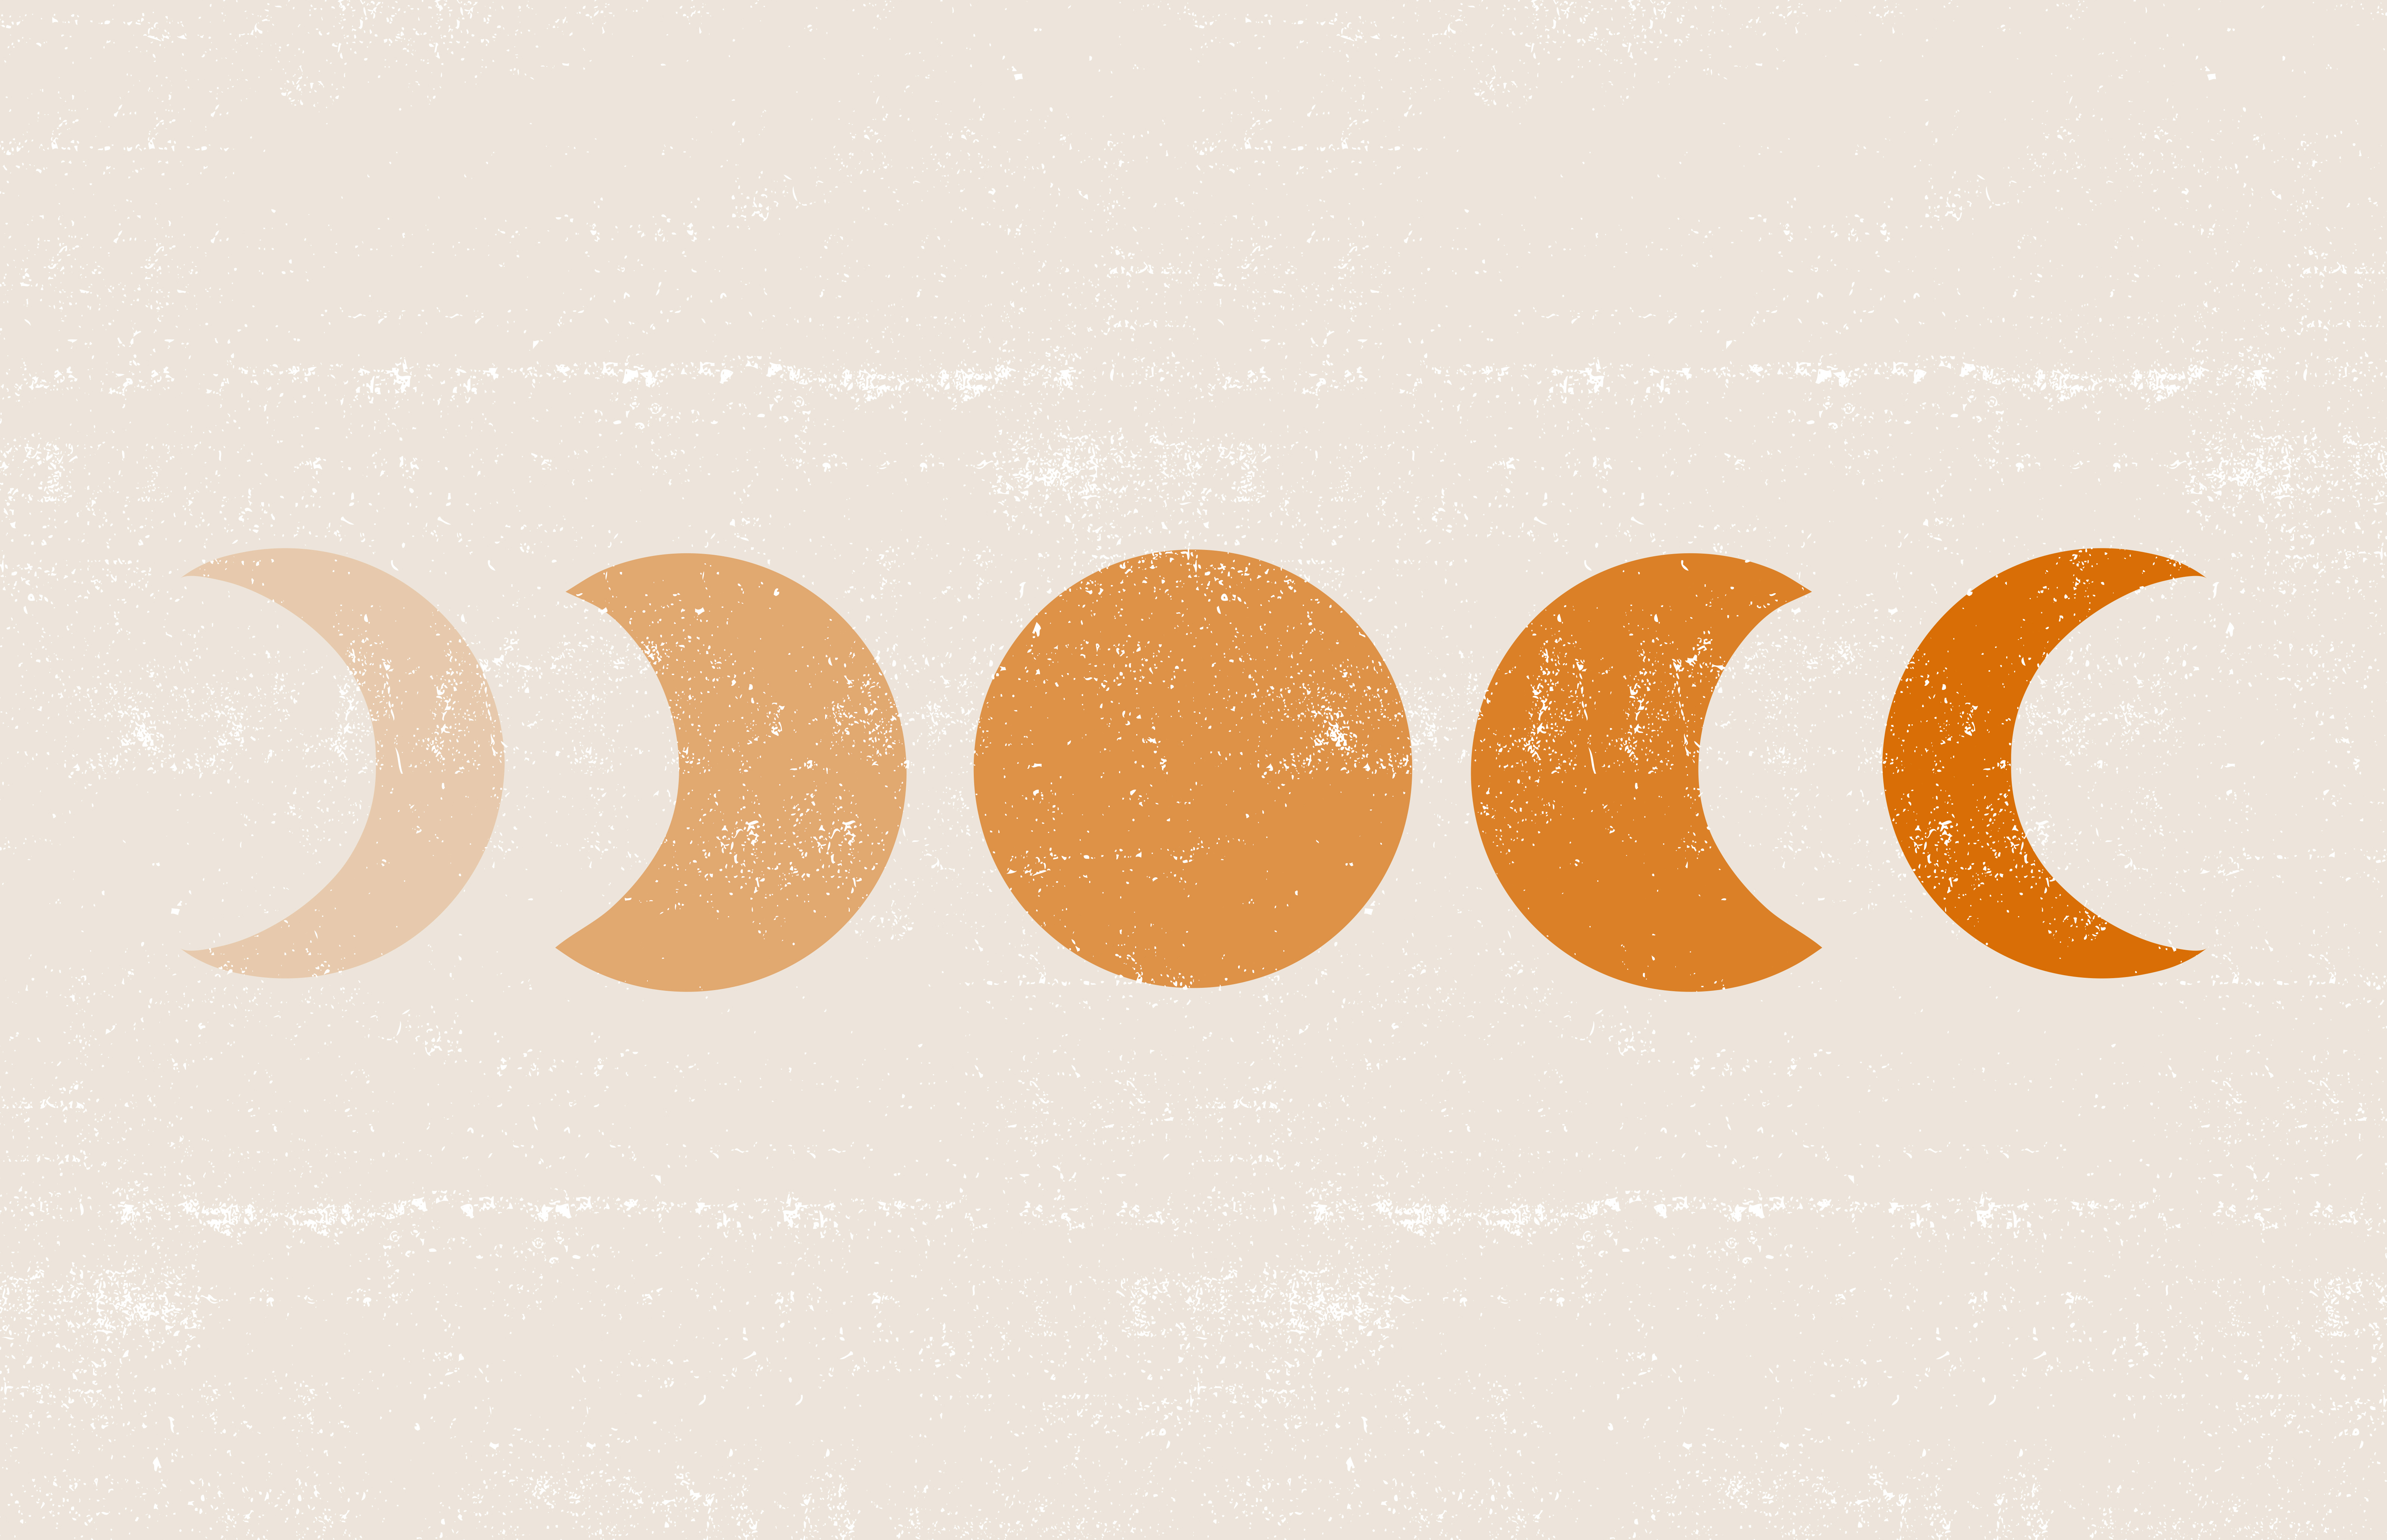 Ilustração com todas as fases da lua: Nova, Cheia, Crescente e Minguante